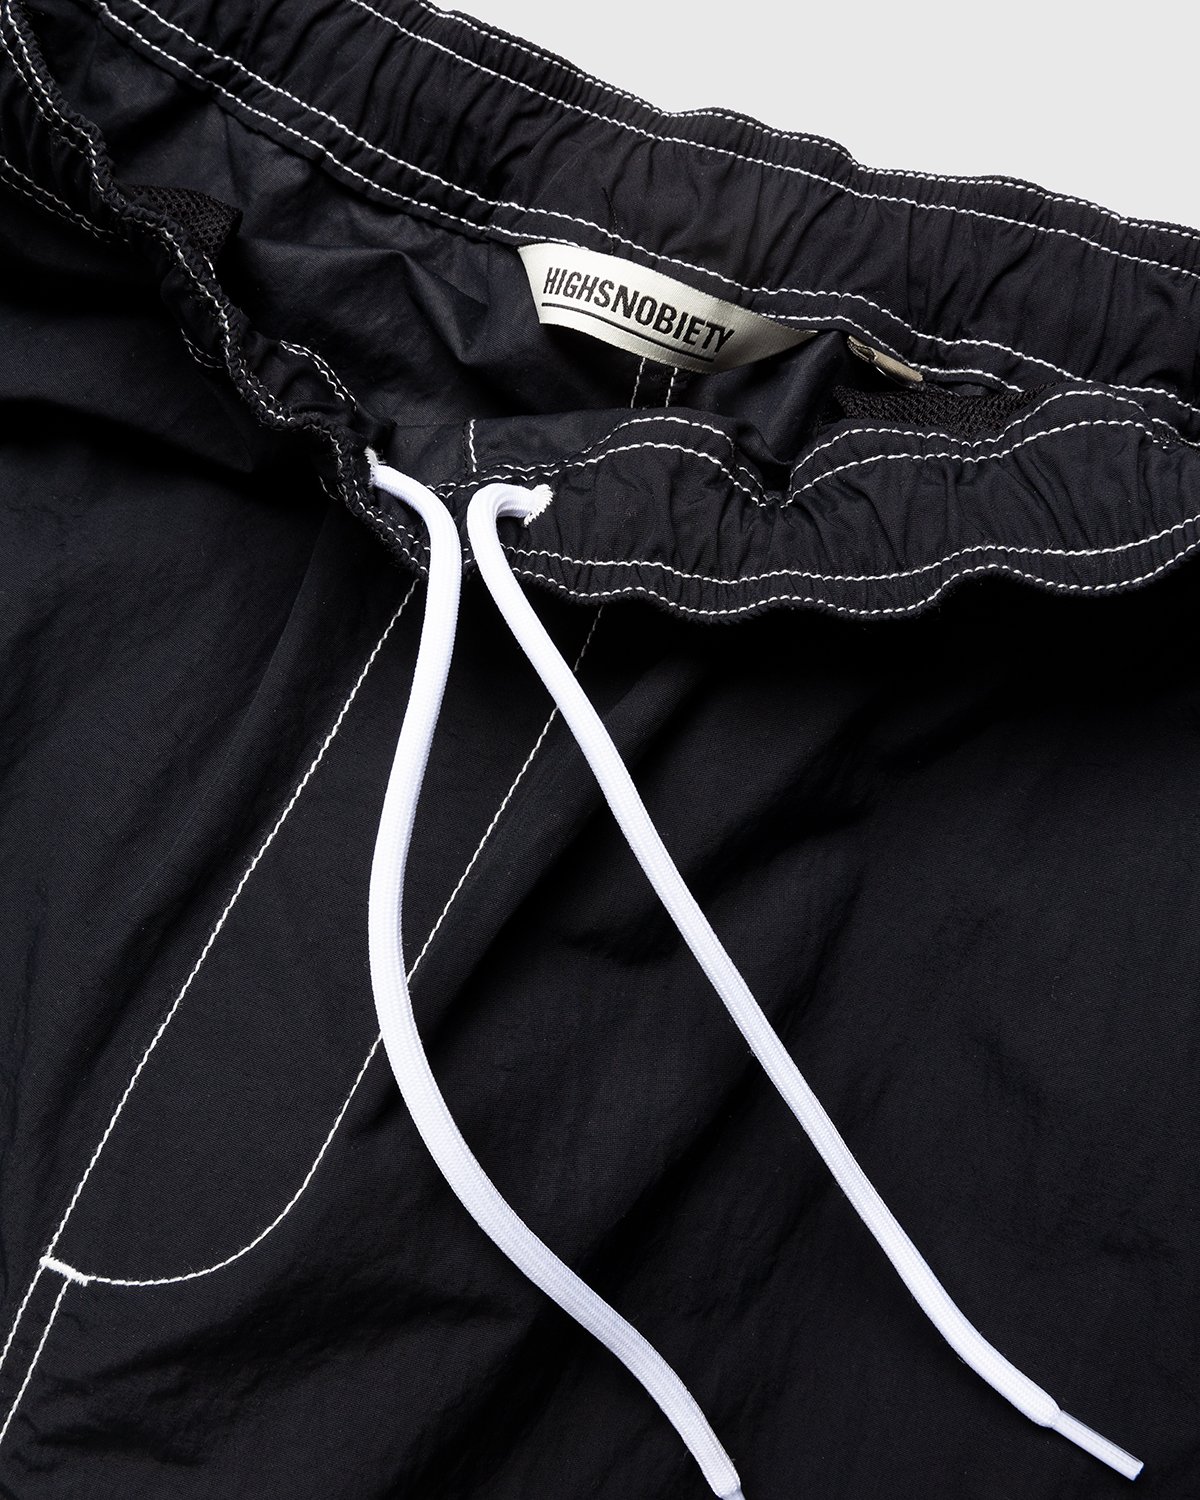 Highsnobiety - Contrast Brushed Nylon Elastic Pants Black - Clothing - Black - Image 5